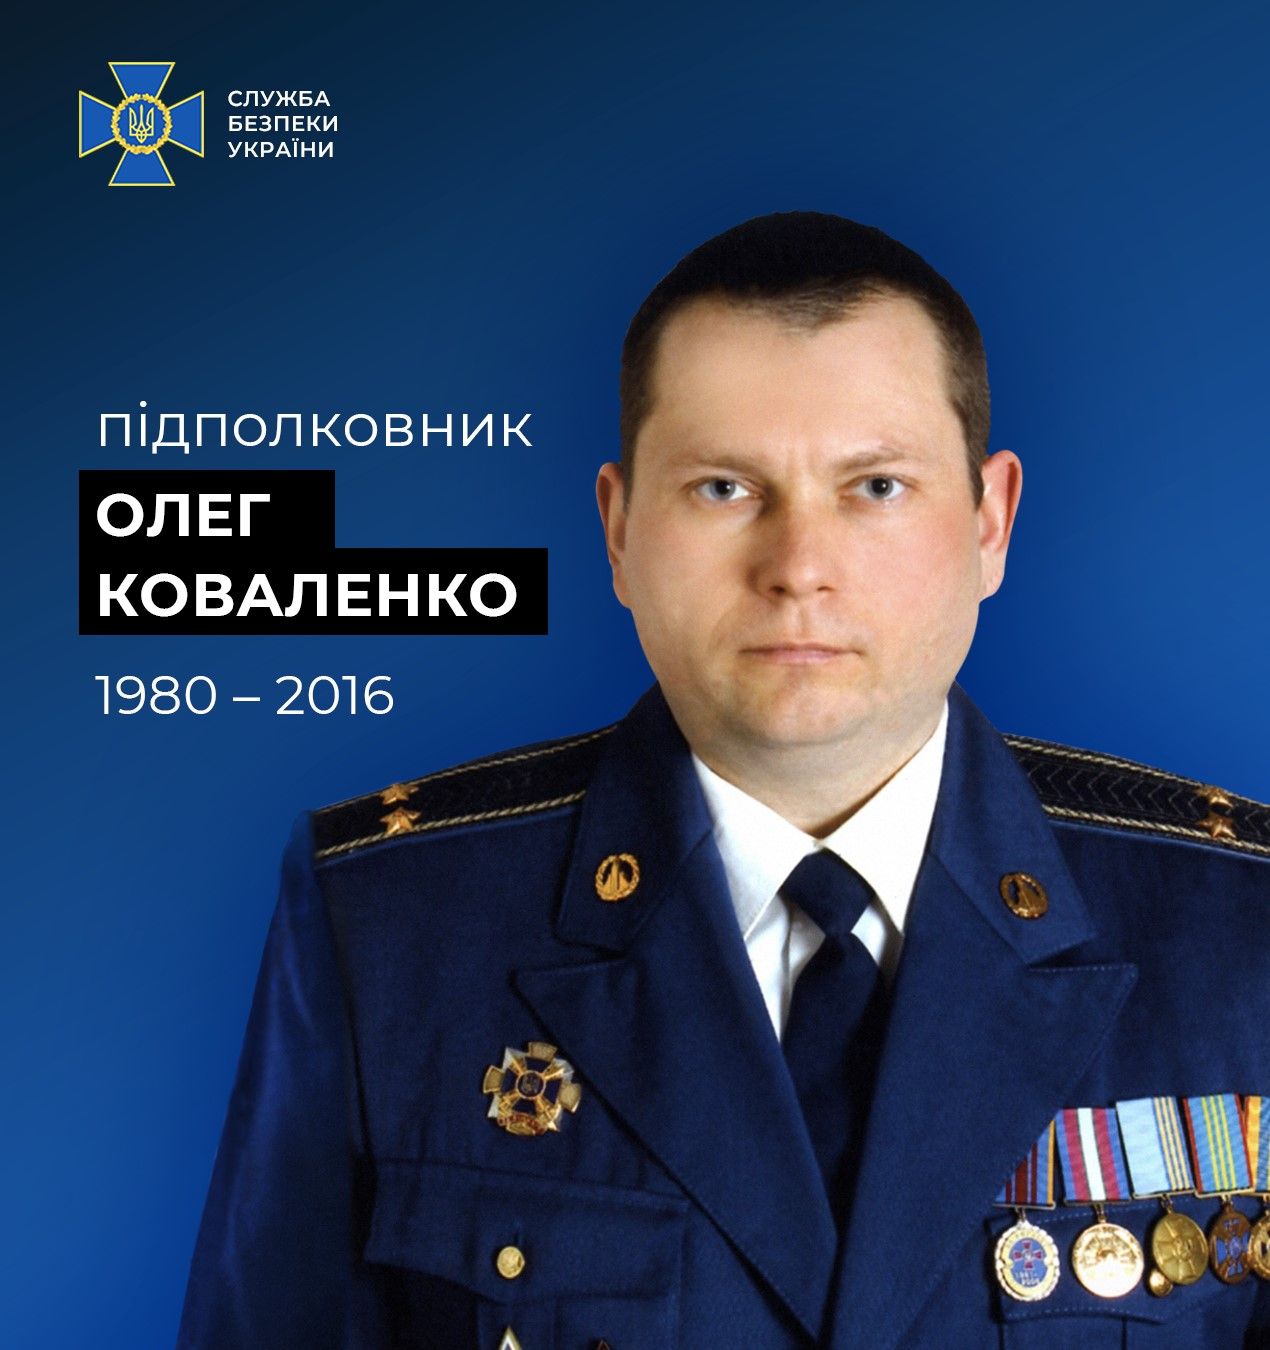 СБУ нагадує про подвиг підполковника Олега Коваленка у 2016 році